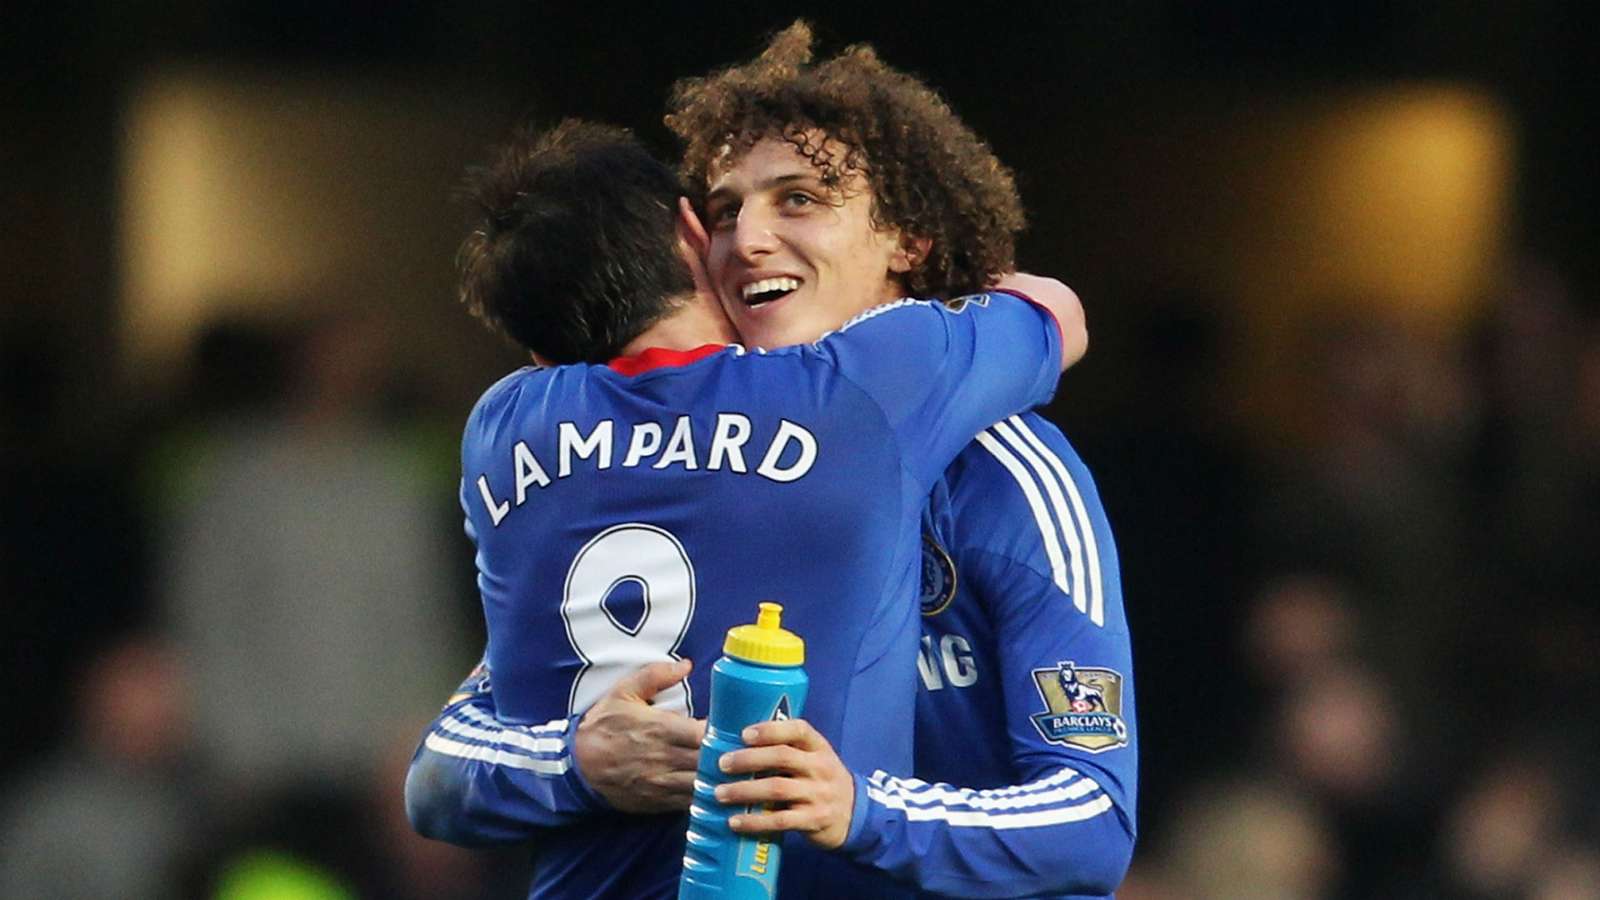 Lampard David Luiz